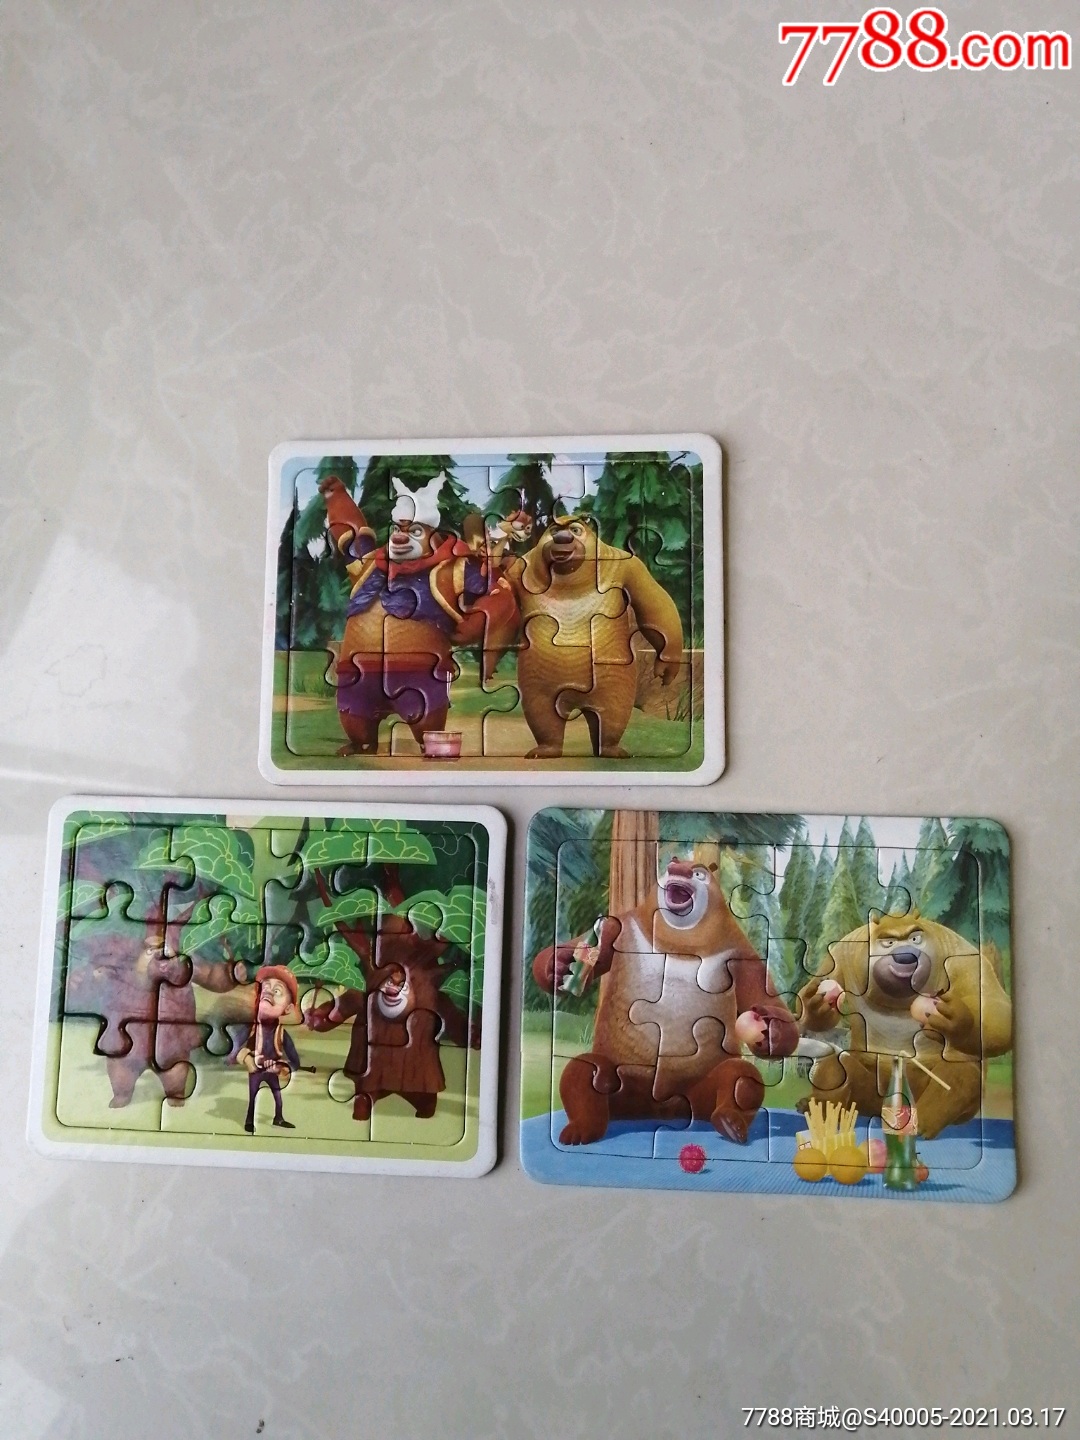 熊出没拼图卡游戏卡3个合售